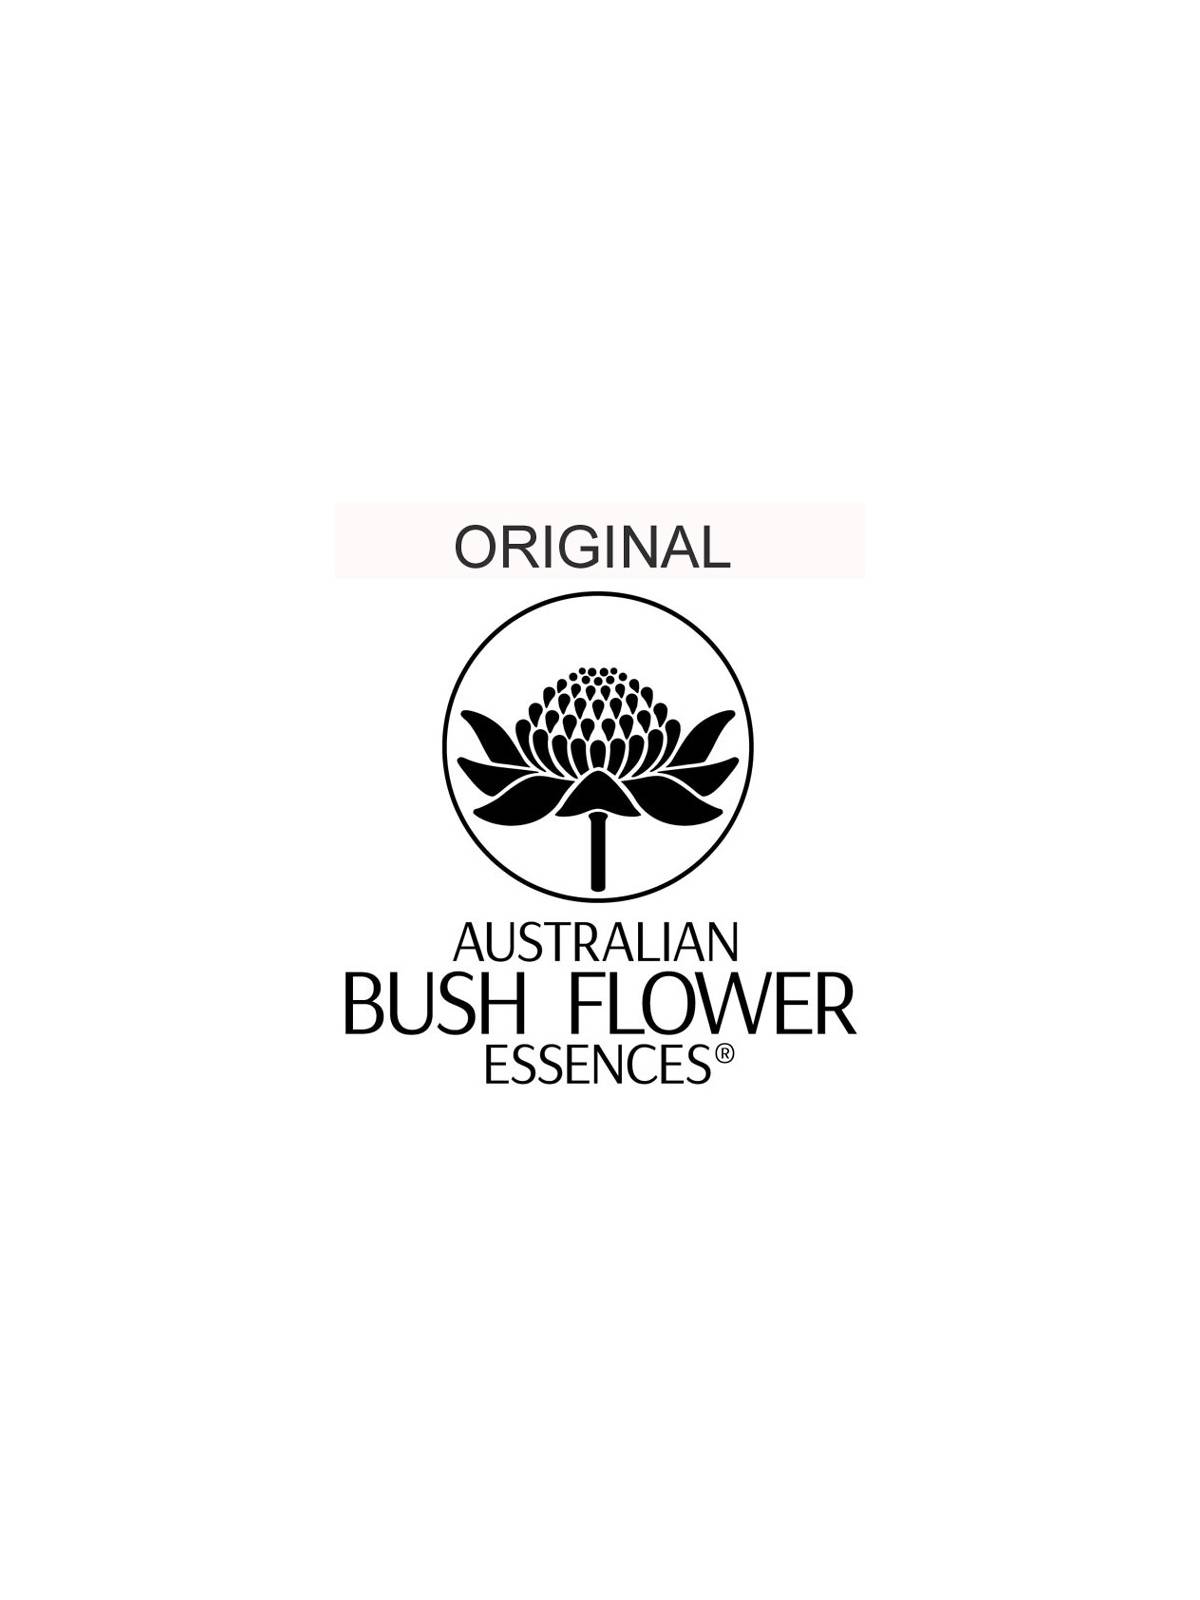 Confid Essence Australian Bush Flower Essences